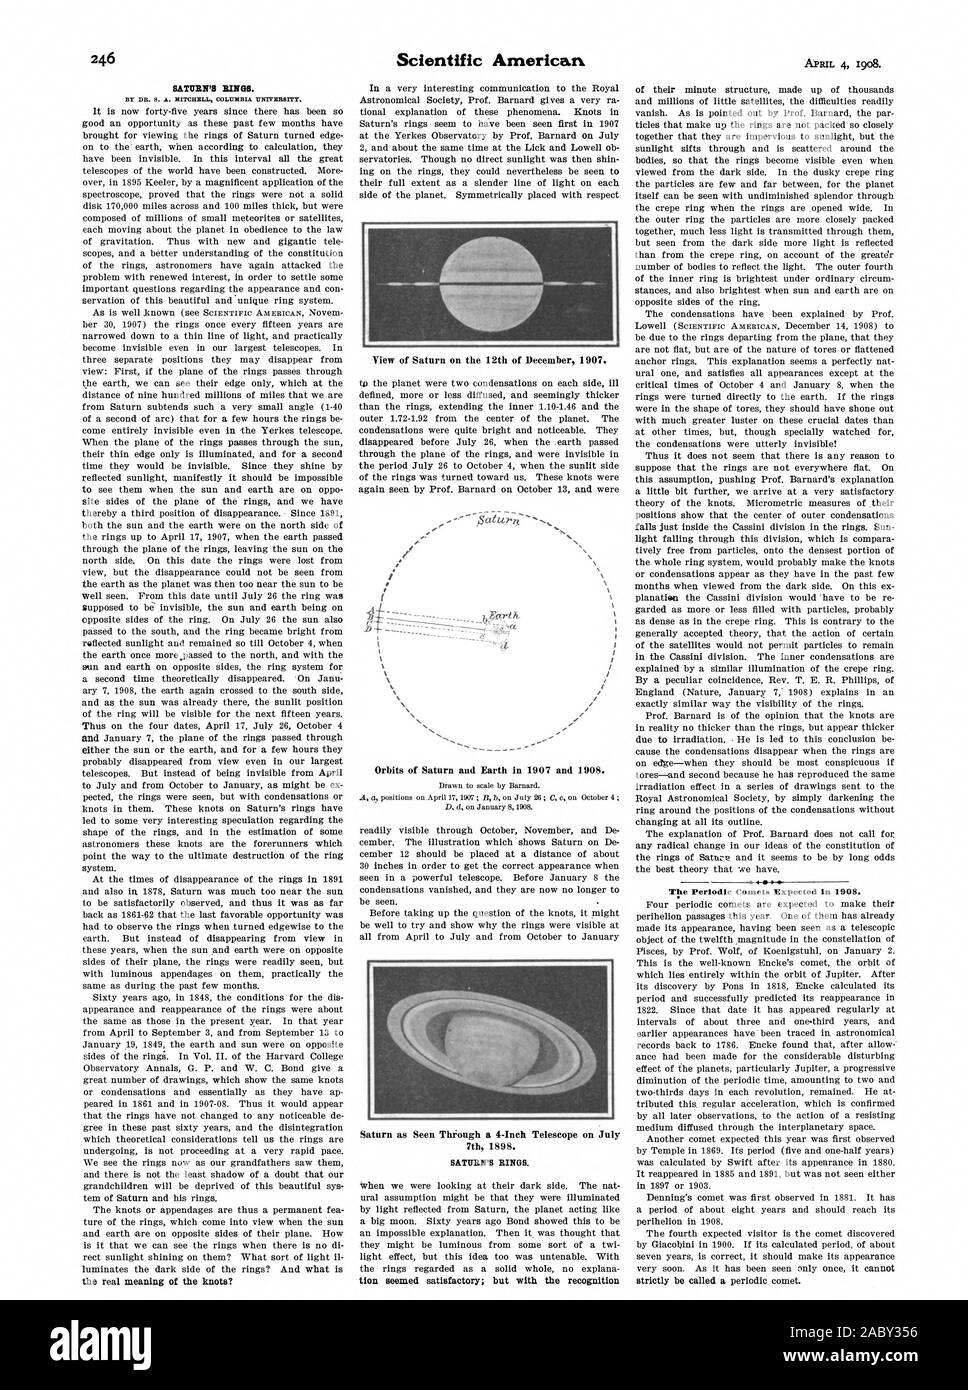 Dal DR. S. A. MITCHELL COLUMBIA UNIVERSITY. Gli anelli di Saturno. La periodica comete atteso nel 1908., Scientific American, 1908-04-04 Foto Stock